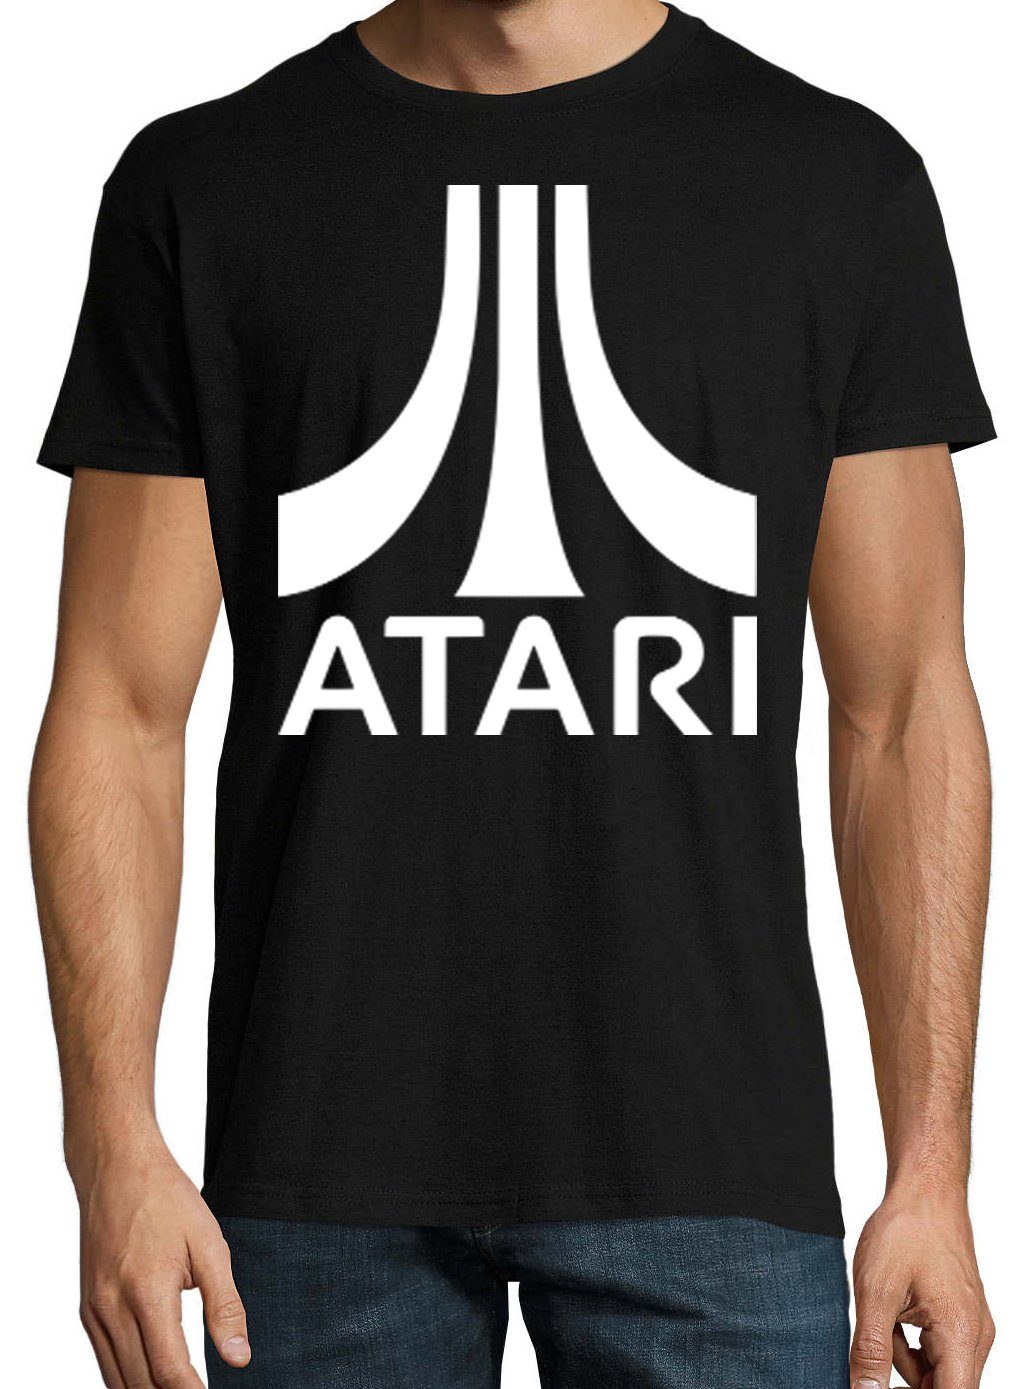 Frontprint T-Shirt Herren tredigem Atari T-Shirt mit Designz Schwarz Youth